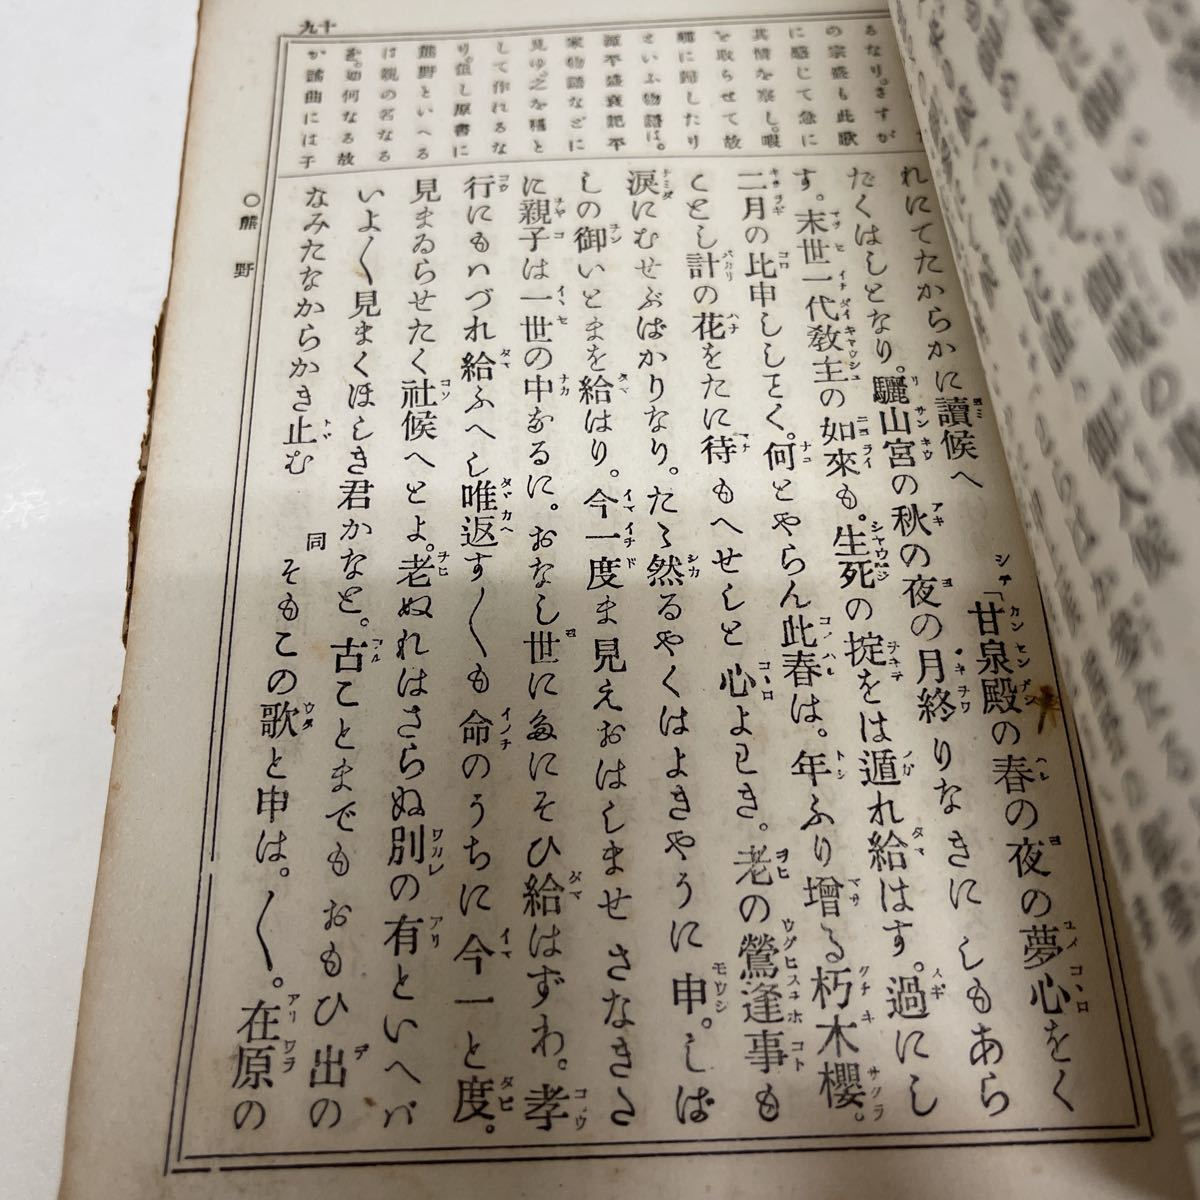 . искривление .. map . Meiji 27 год стрела рисовое поле правильный .( сборник ) Yamato рисовое поле .. реальный сырой 9 . талант приятный традиция старинная книга японская книга 